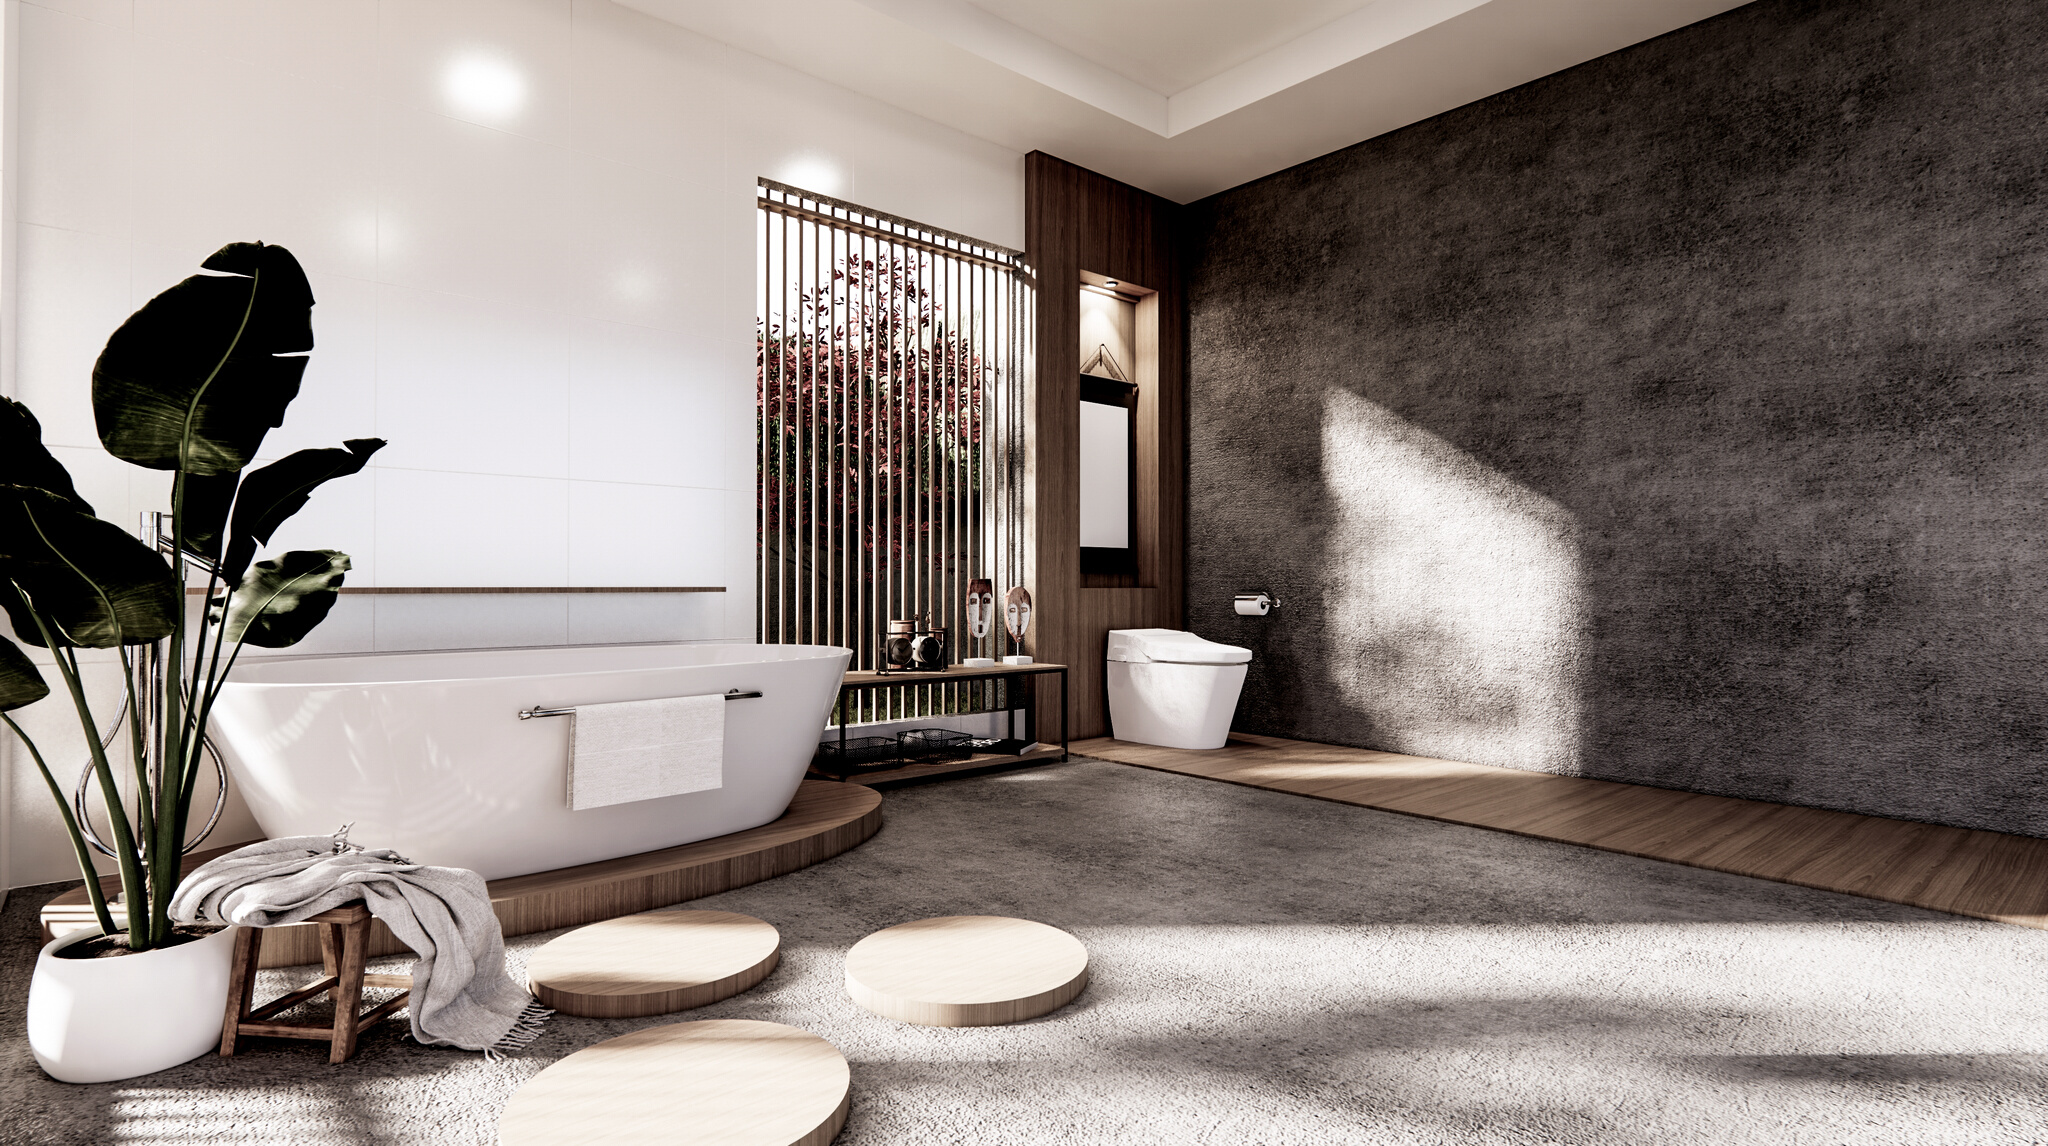 Bathroom Zen Style Interior Design 3d Render